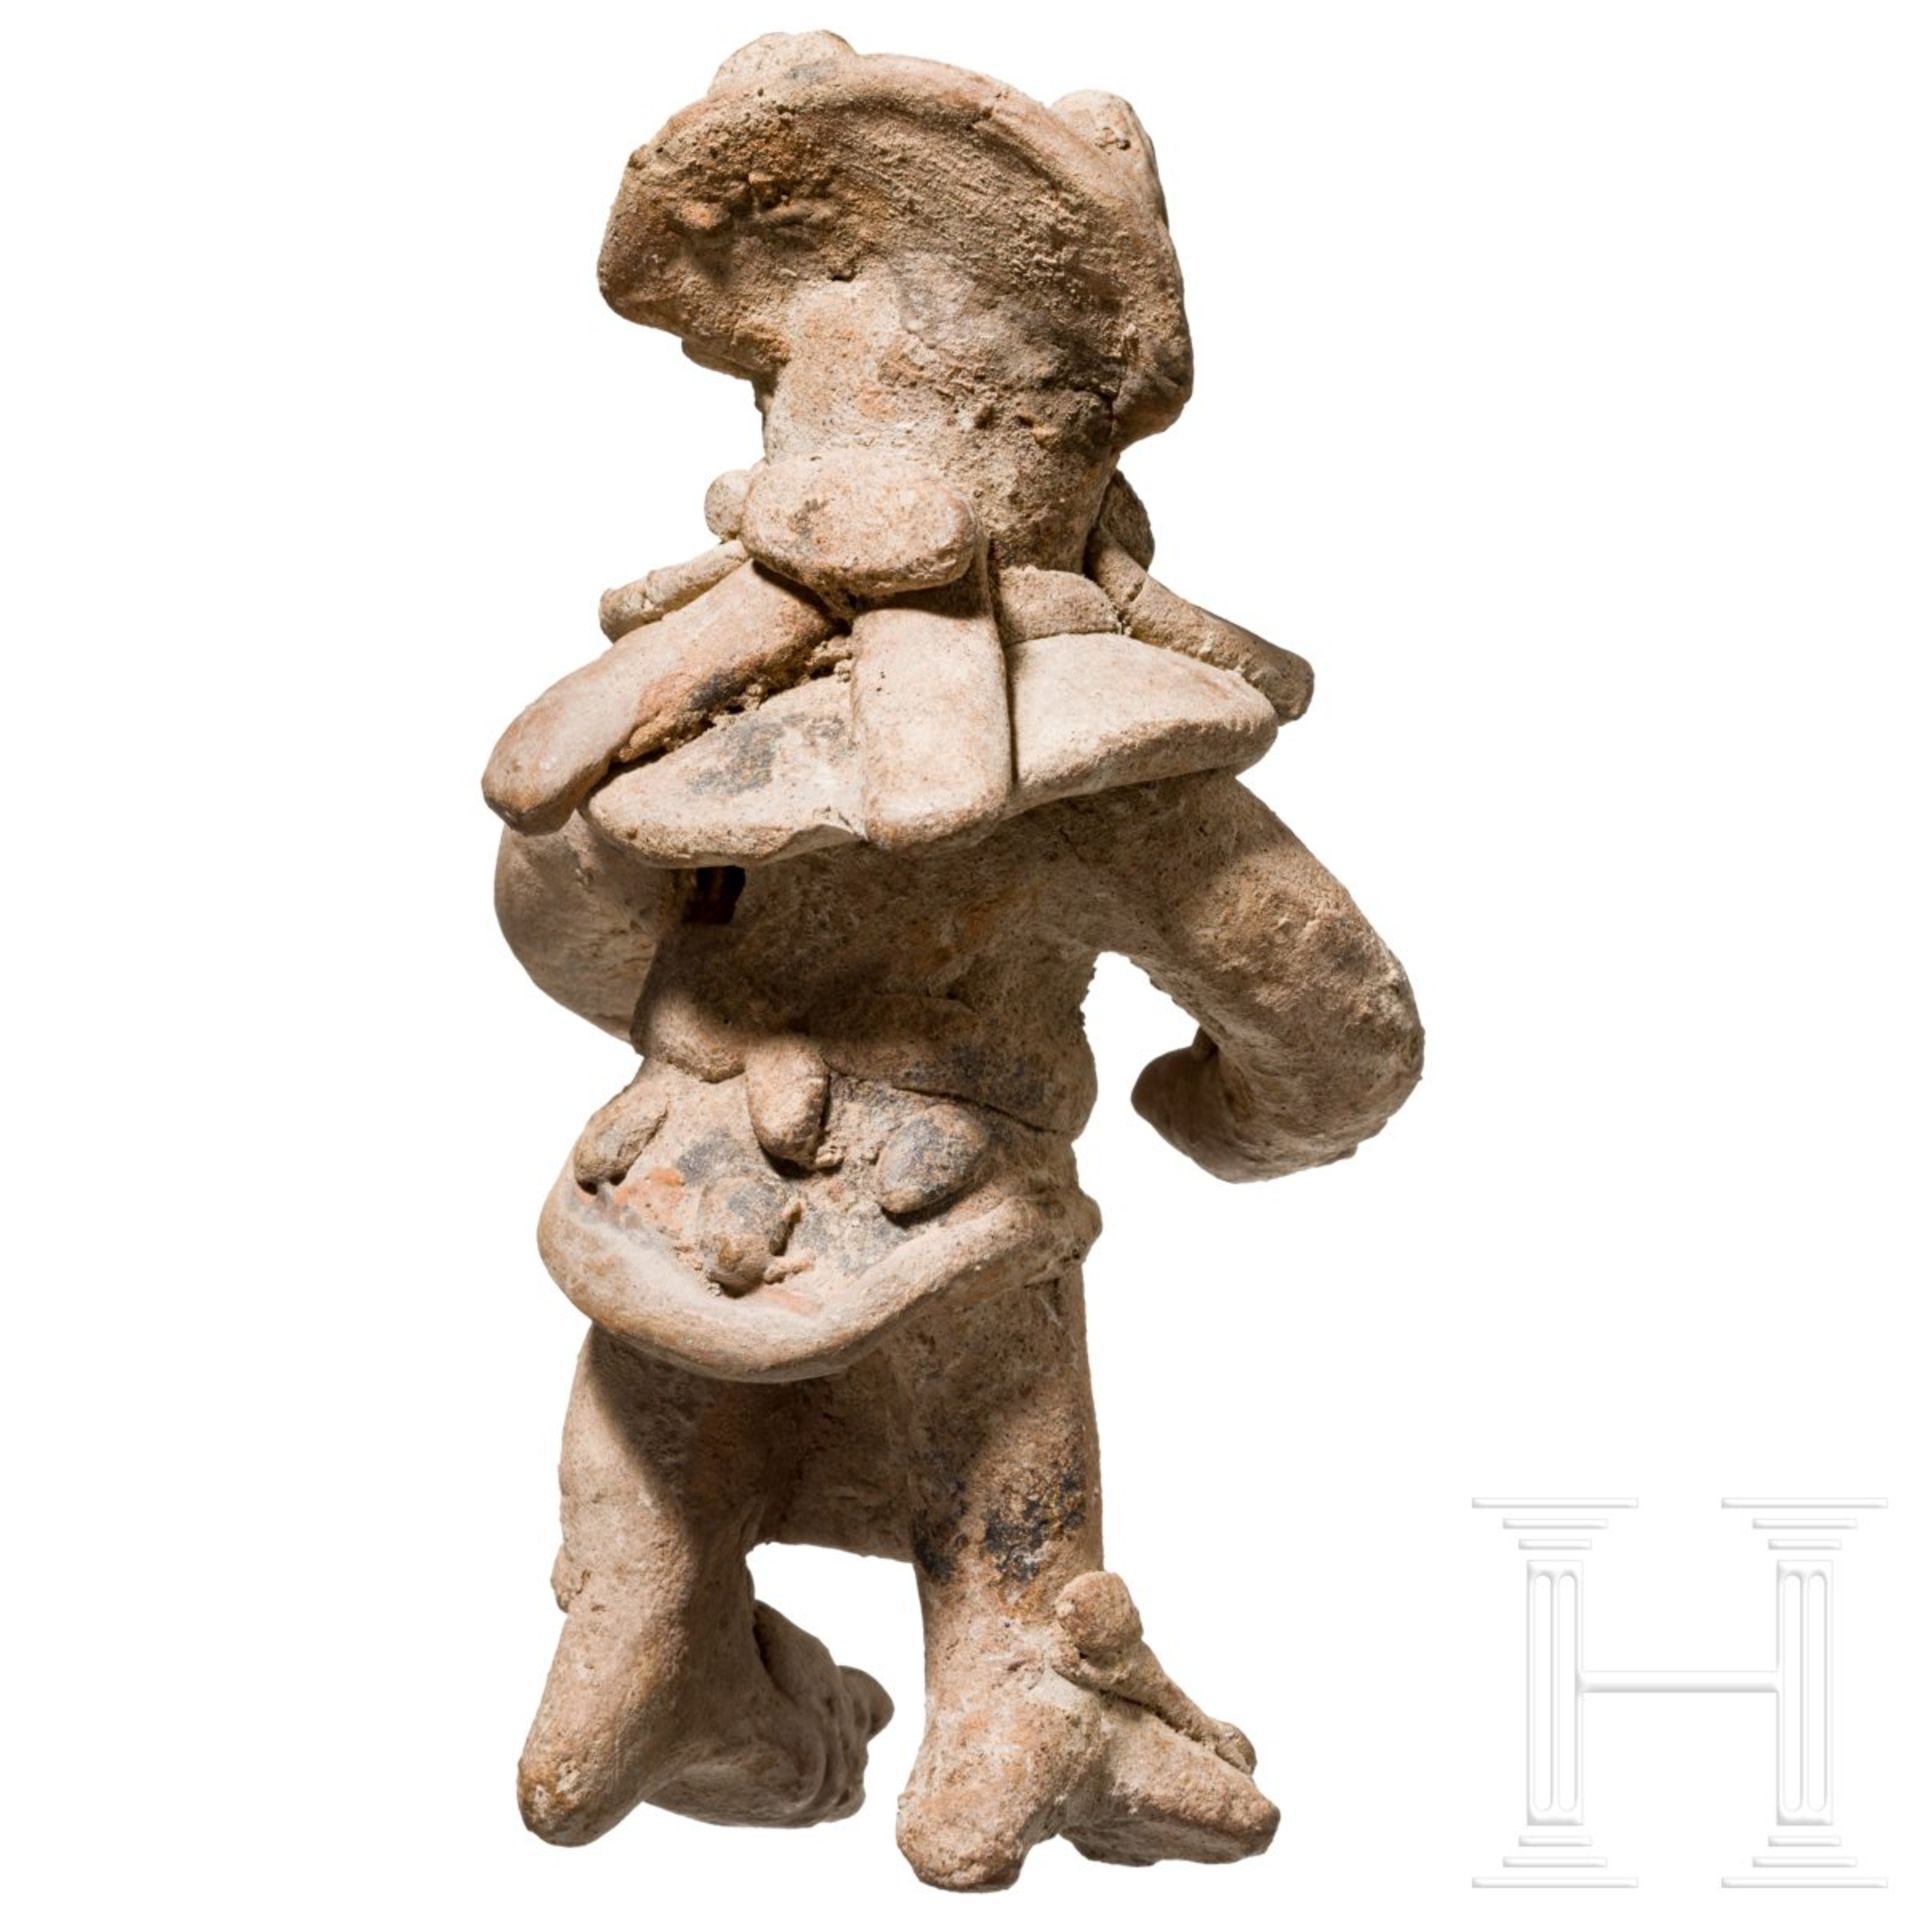 Seltene Terrakottafigur mit Koyotenmaske, Mexiko, Veracruz, ca. 900 - 1200 n. Chr. - Image 5 of 5